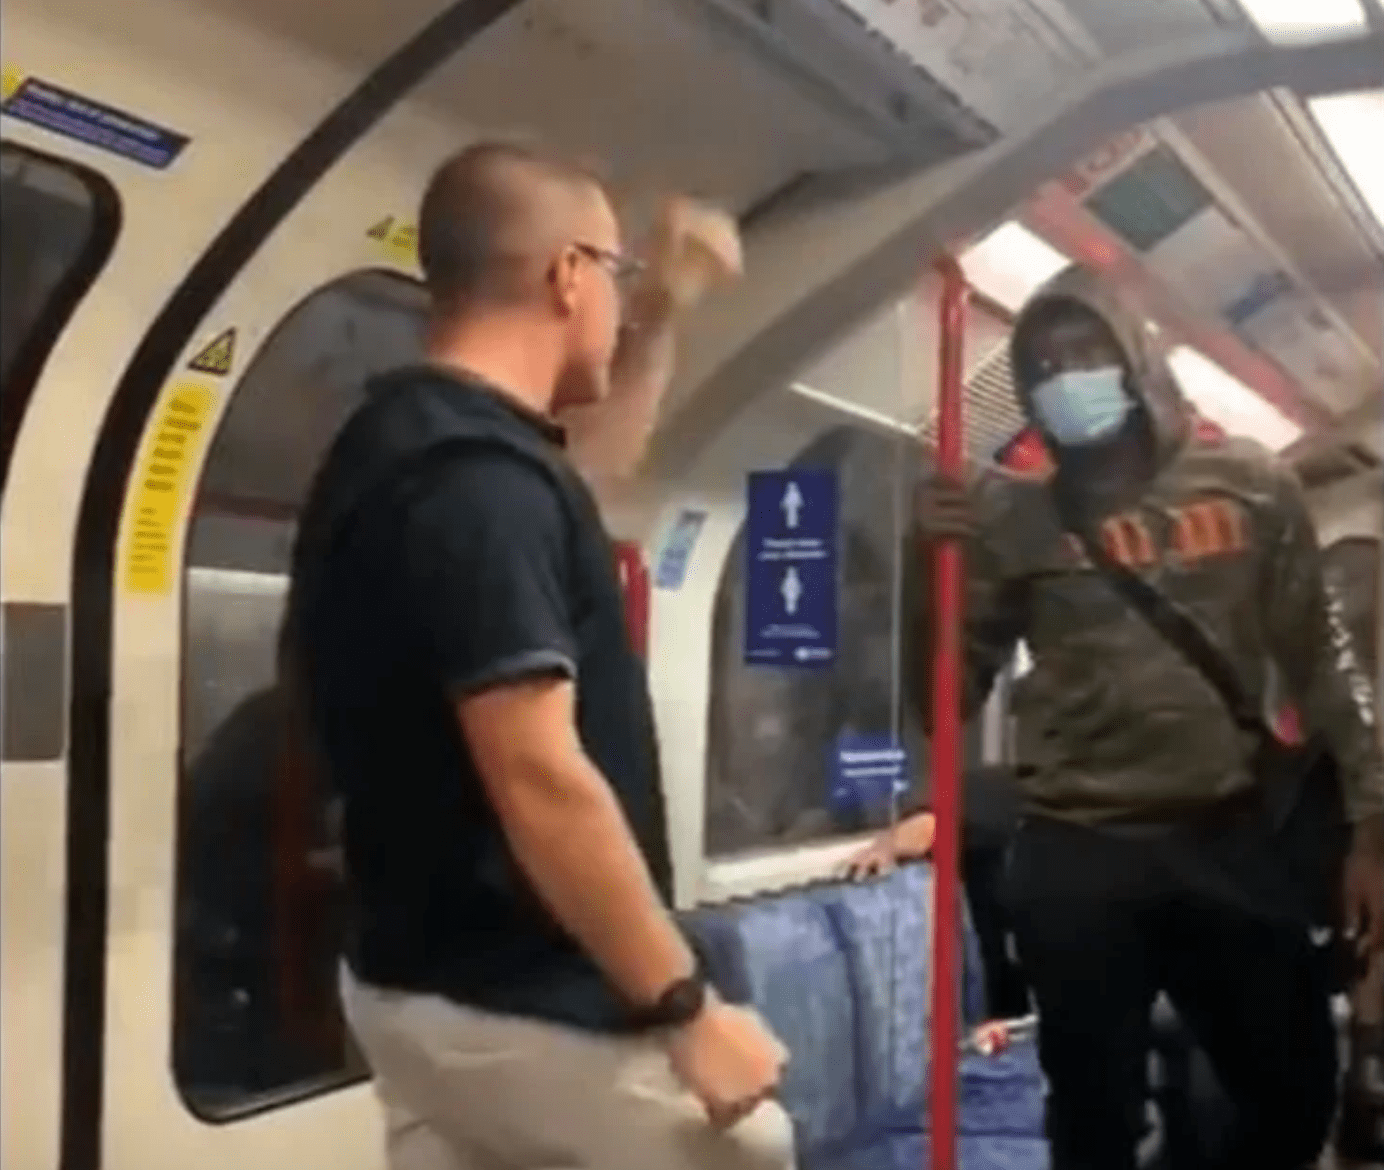 ¡Santos trancazos! Hombre blanco lanza insultos racistas y es noqueado en el metro